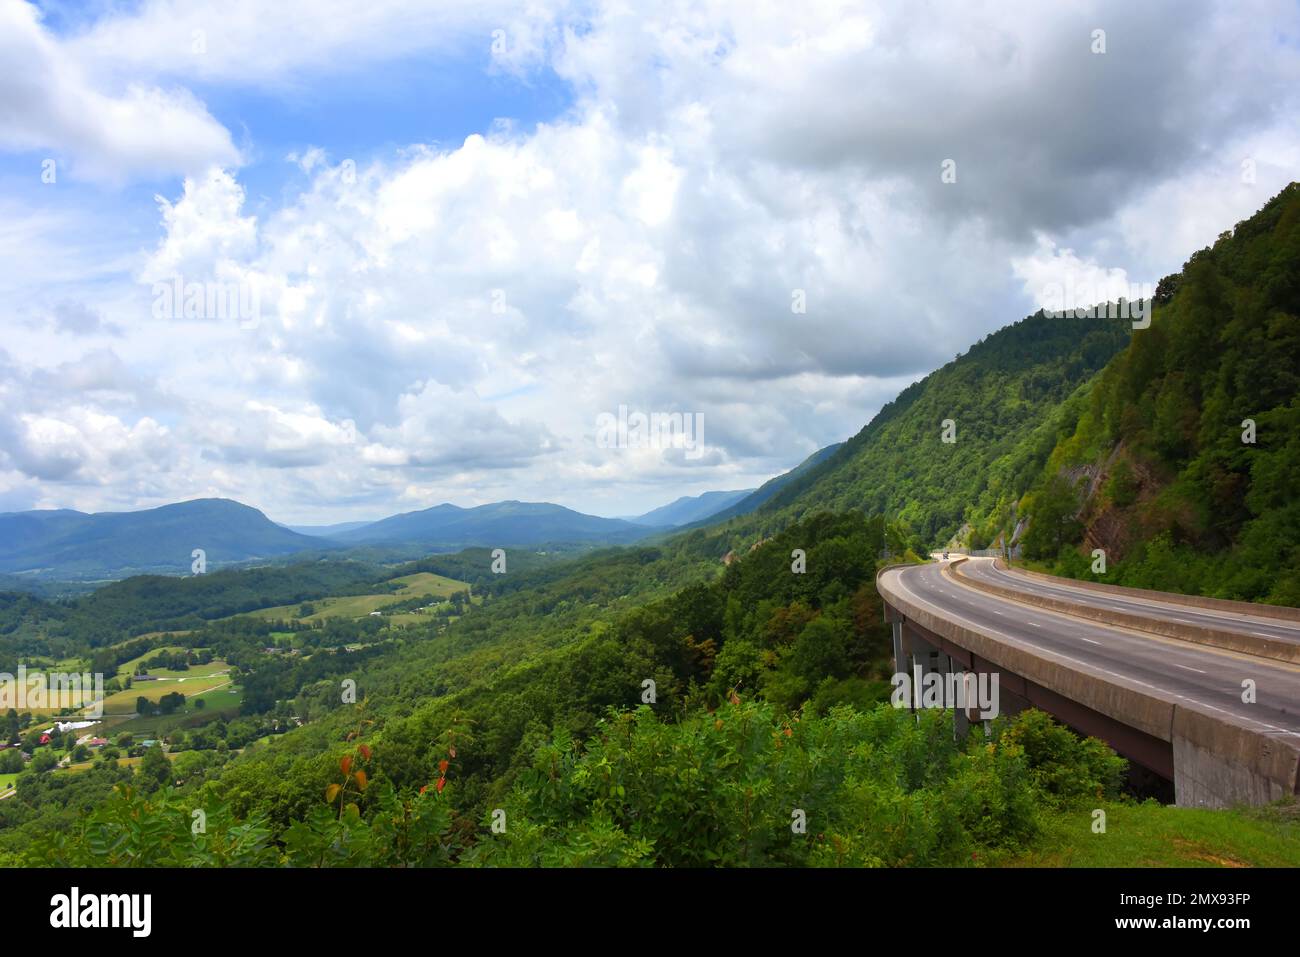 James Walker Roberson Memorial Scenic Drive se curva alrededor de las montañas Apalaches en Virginia, al sur de Norton. El cielo está nublado con una mirada azul Foto de stock